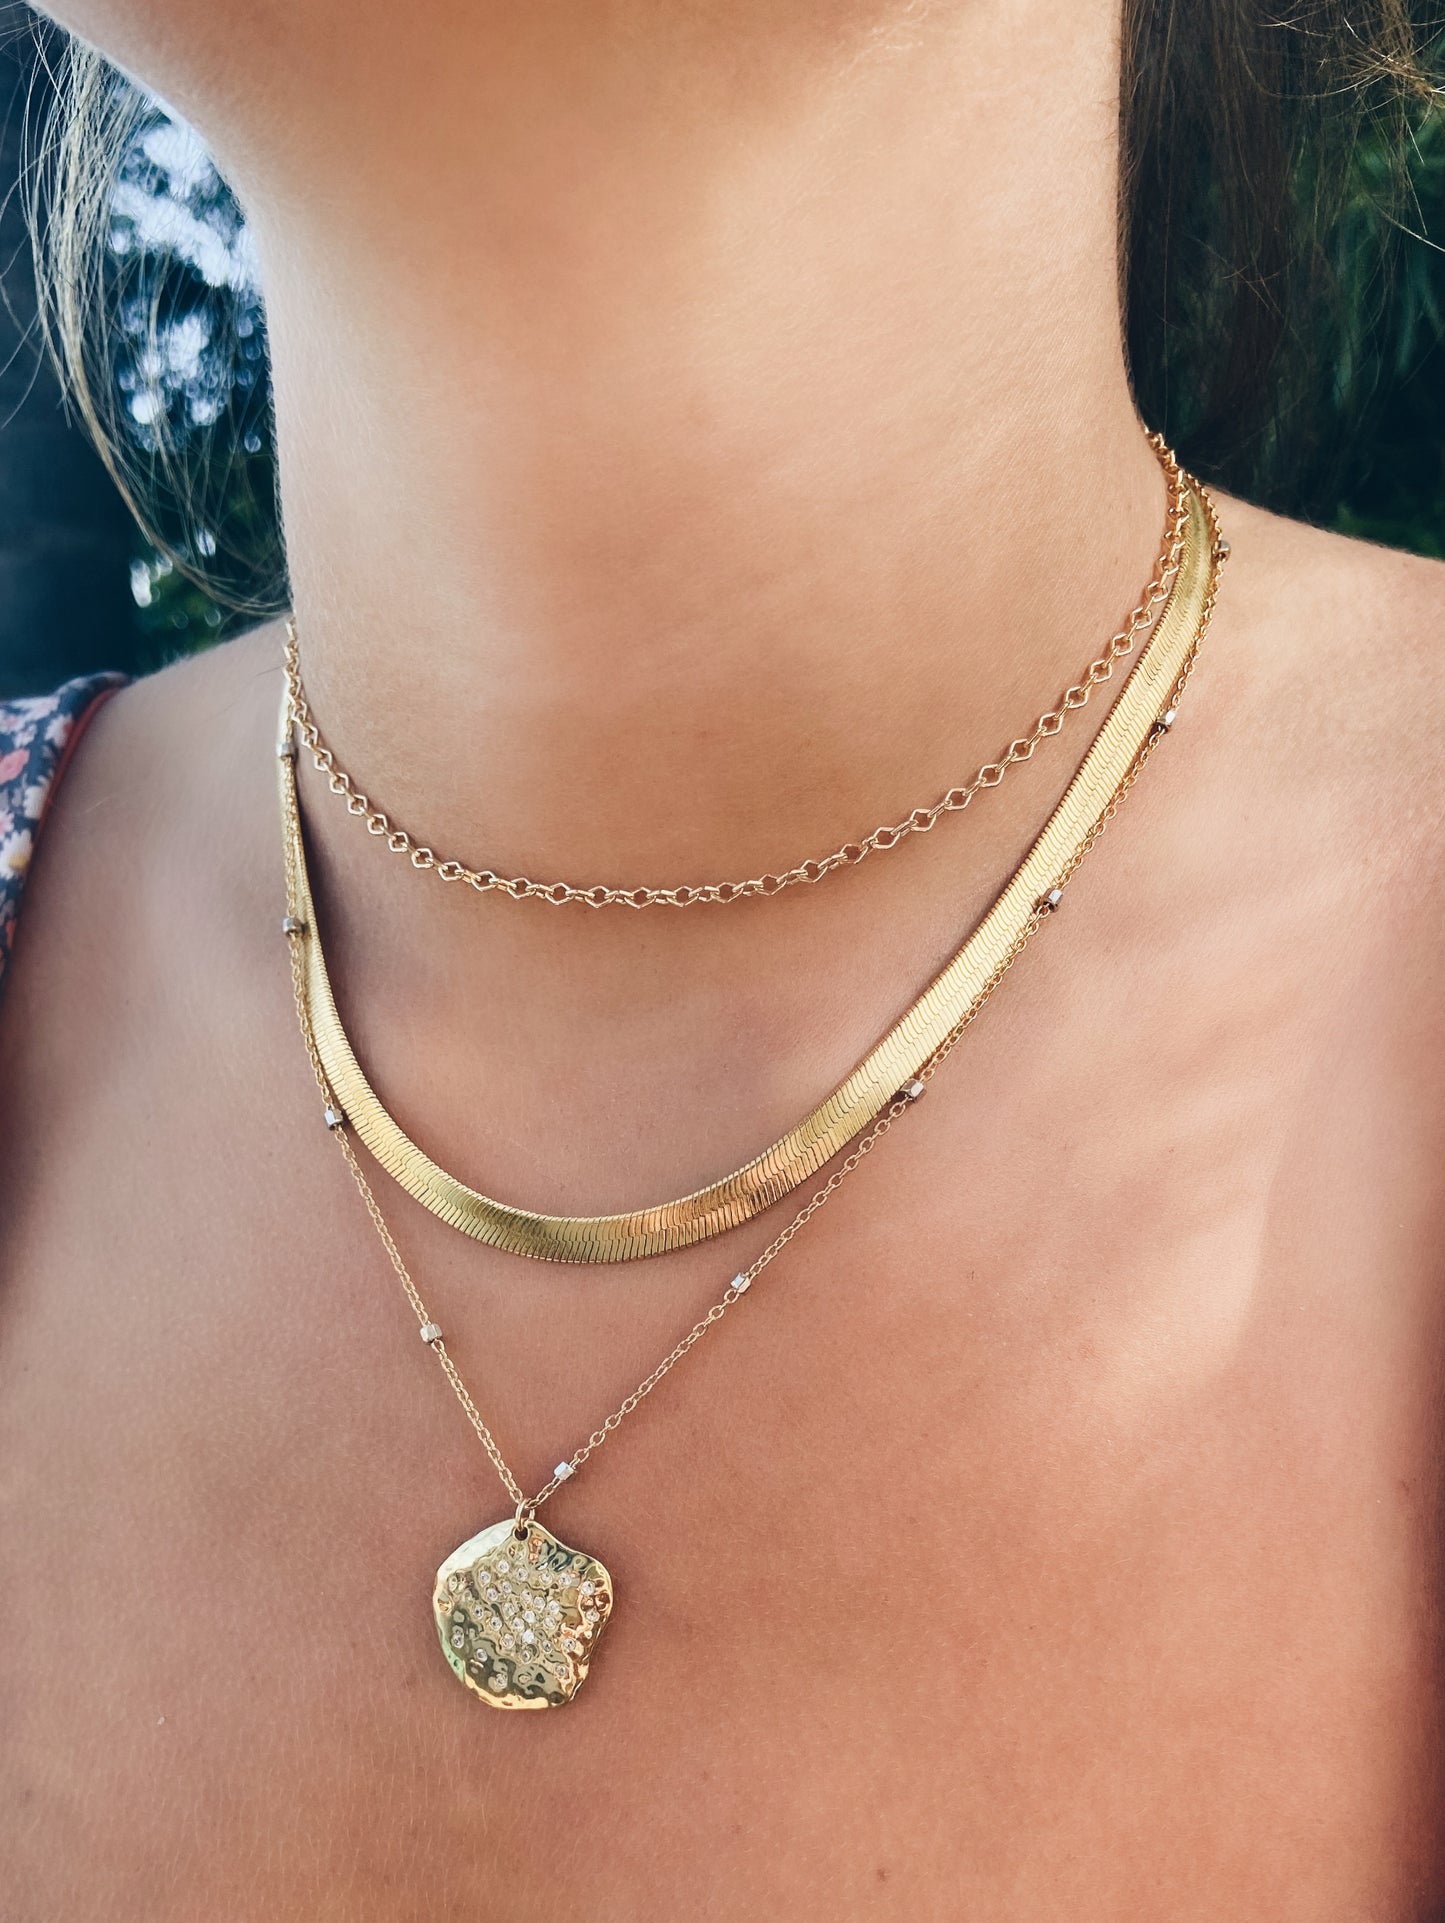 The Viper Chain Necklace